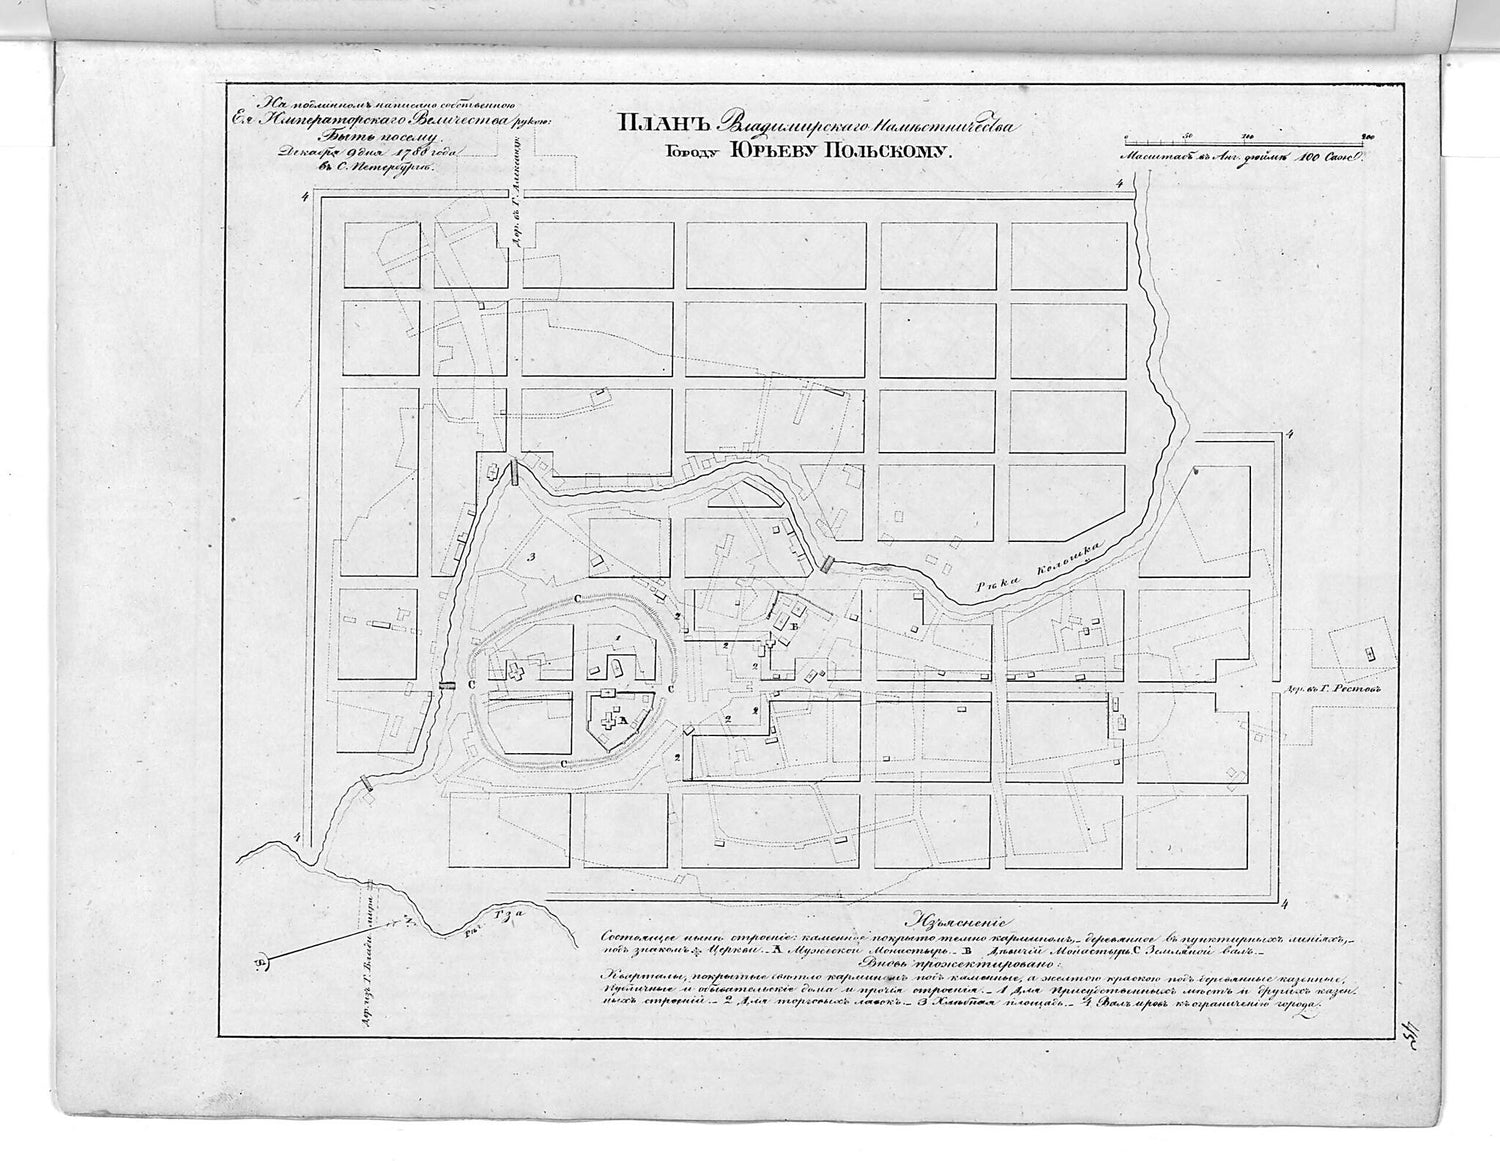 This old map of Plan Vladimirskogo Namestnichestva Gorodu I︠U︡r&